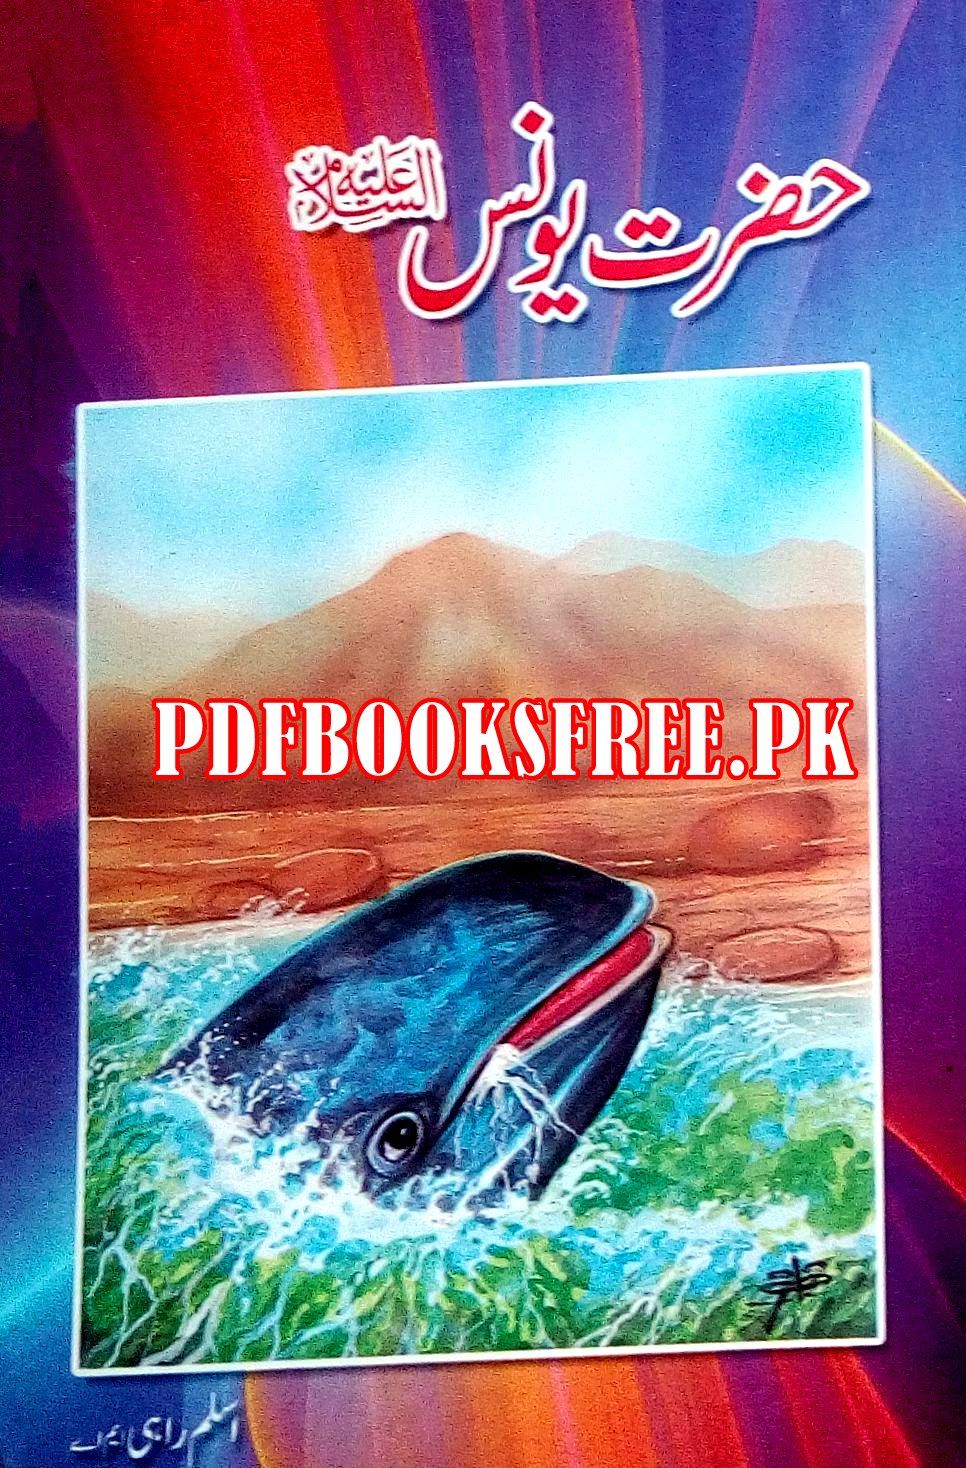 urdu books read online pdf